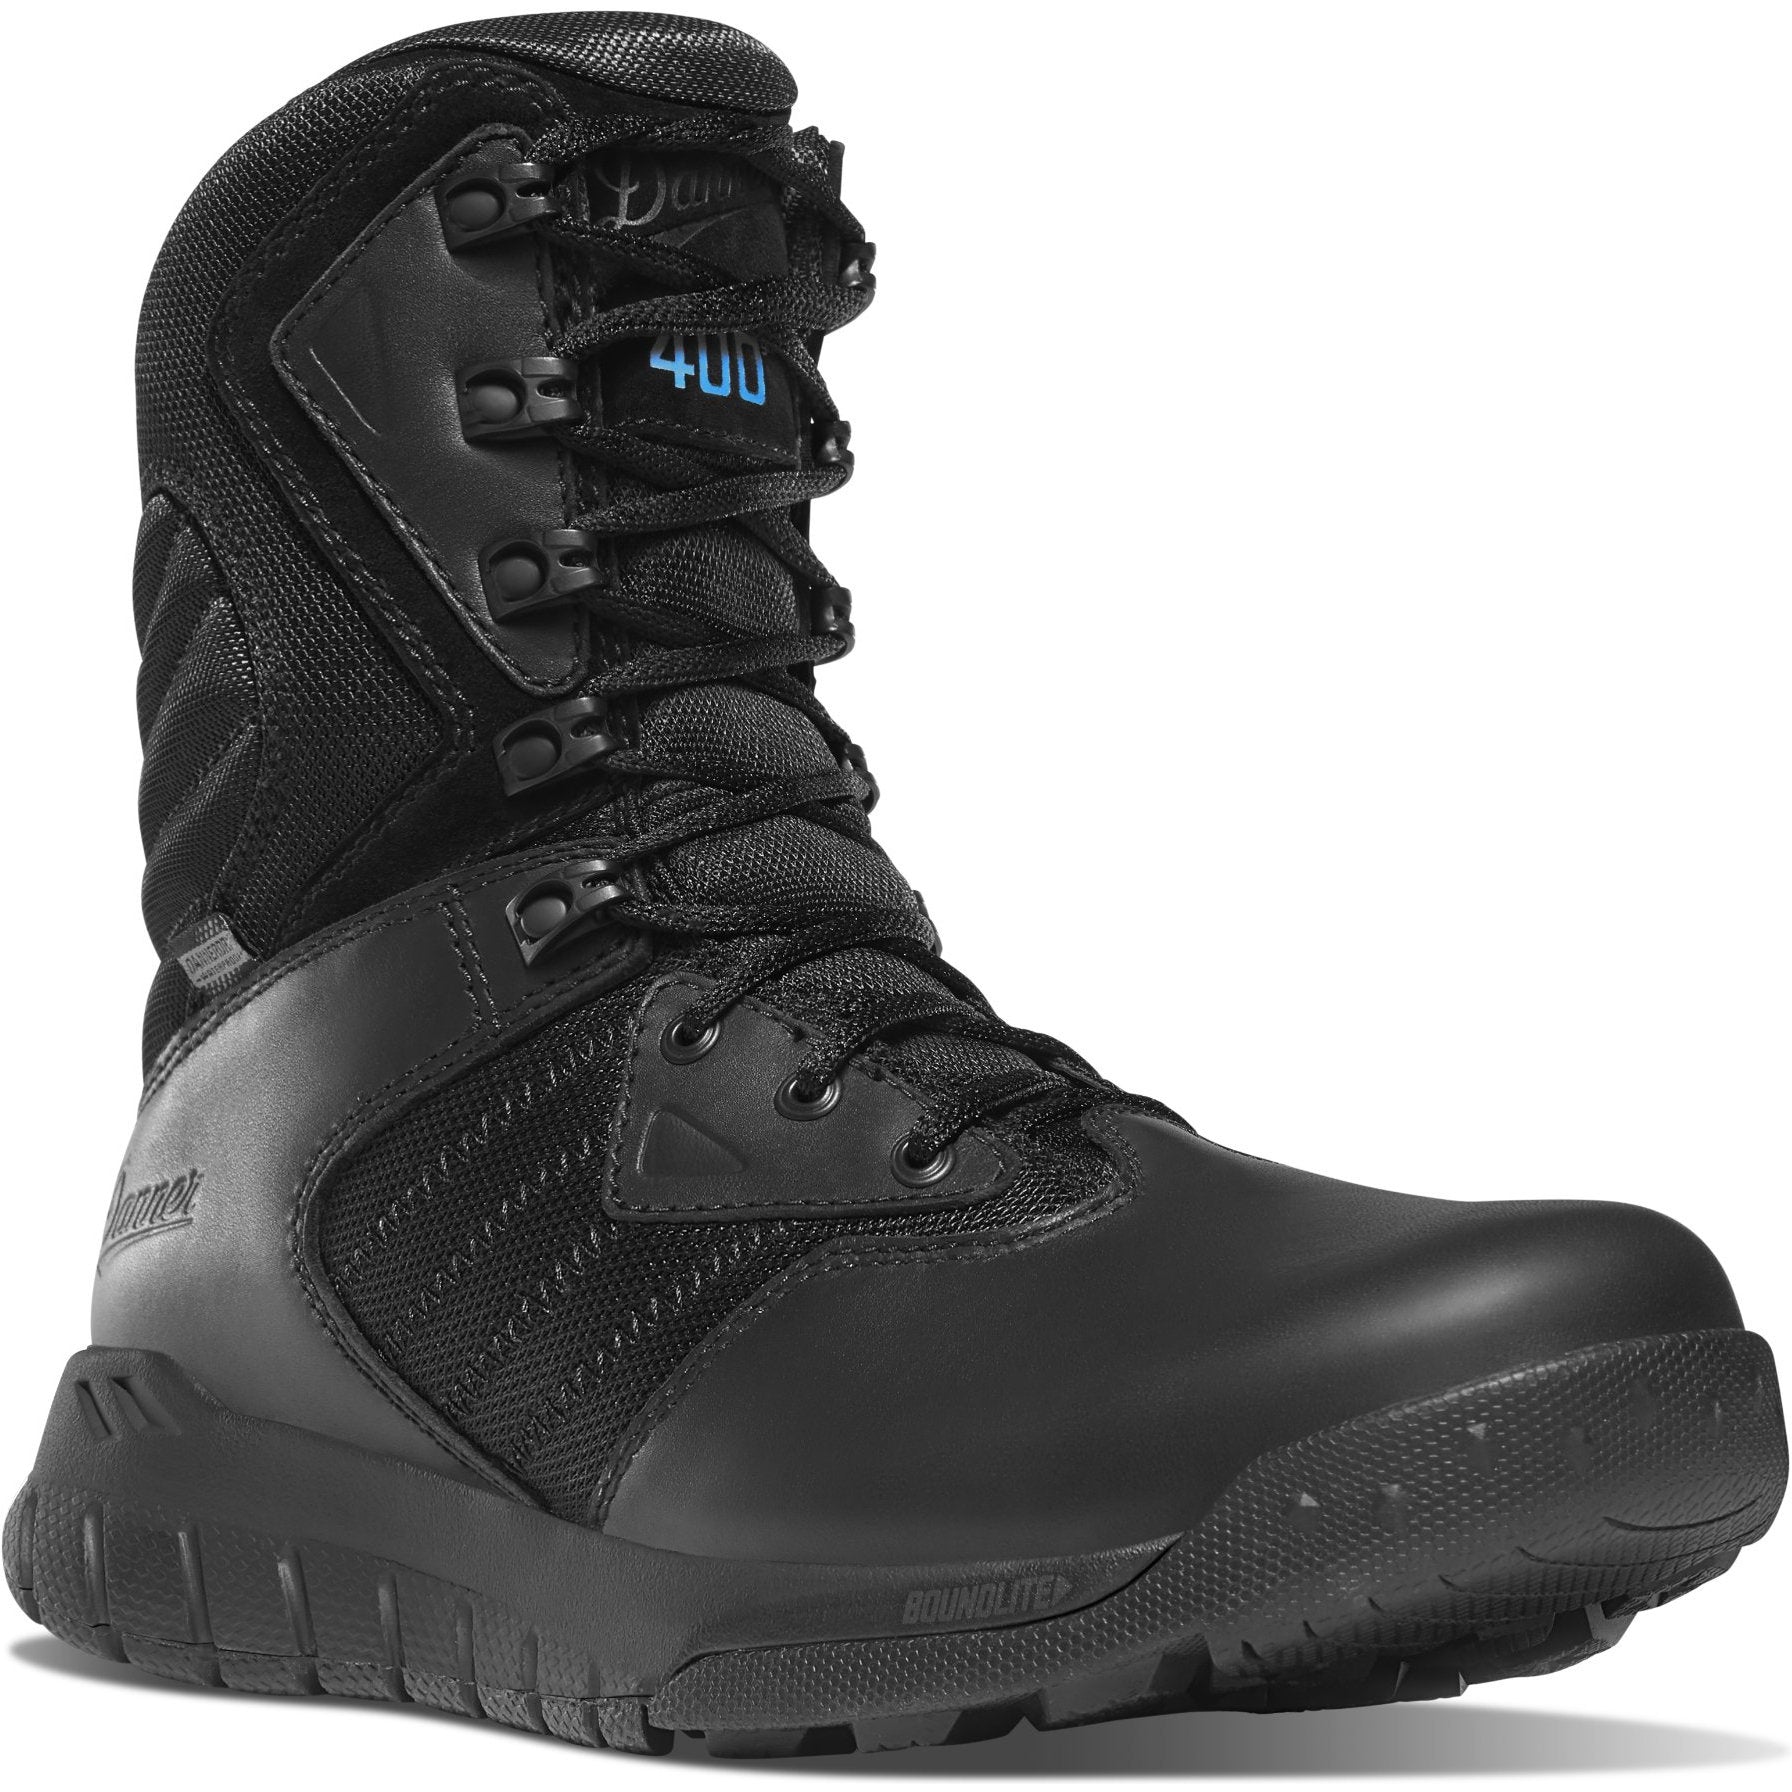 Danner Men's Instinct Tactical 8" WP 400G Side-Zip Boot- Black - 25332 7 / Medium / Black - Overlook Boots